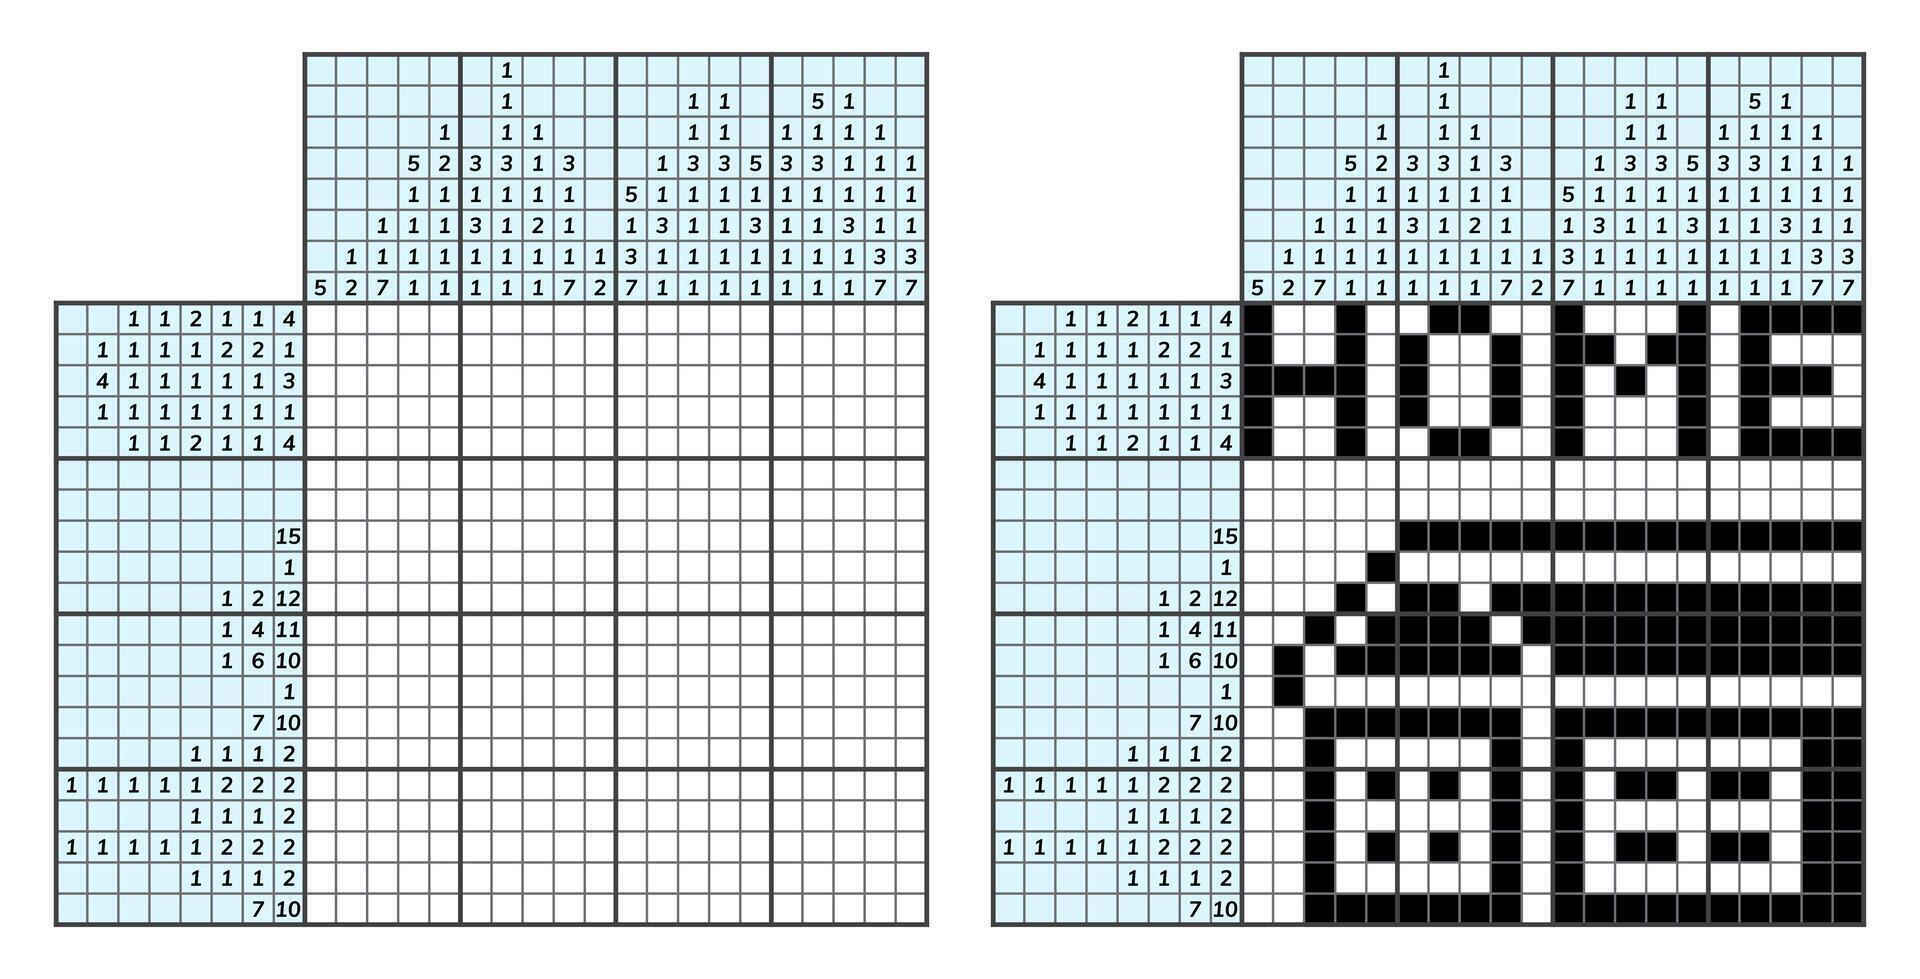 japonés crucigrama rompecabezas. niños y adulto matemático mosaico. nonograma. lógica rompecabezas juego. digital jeroglífico. vector ilustración